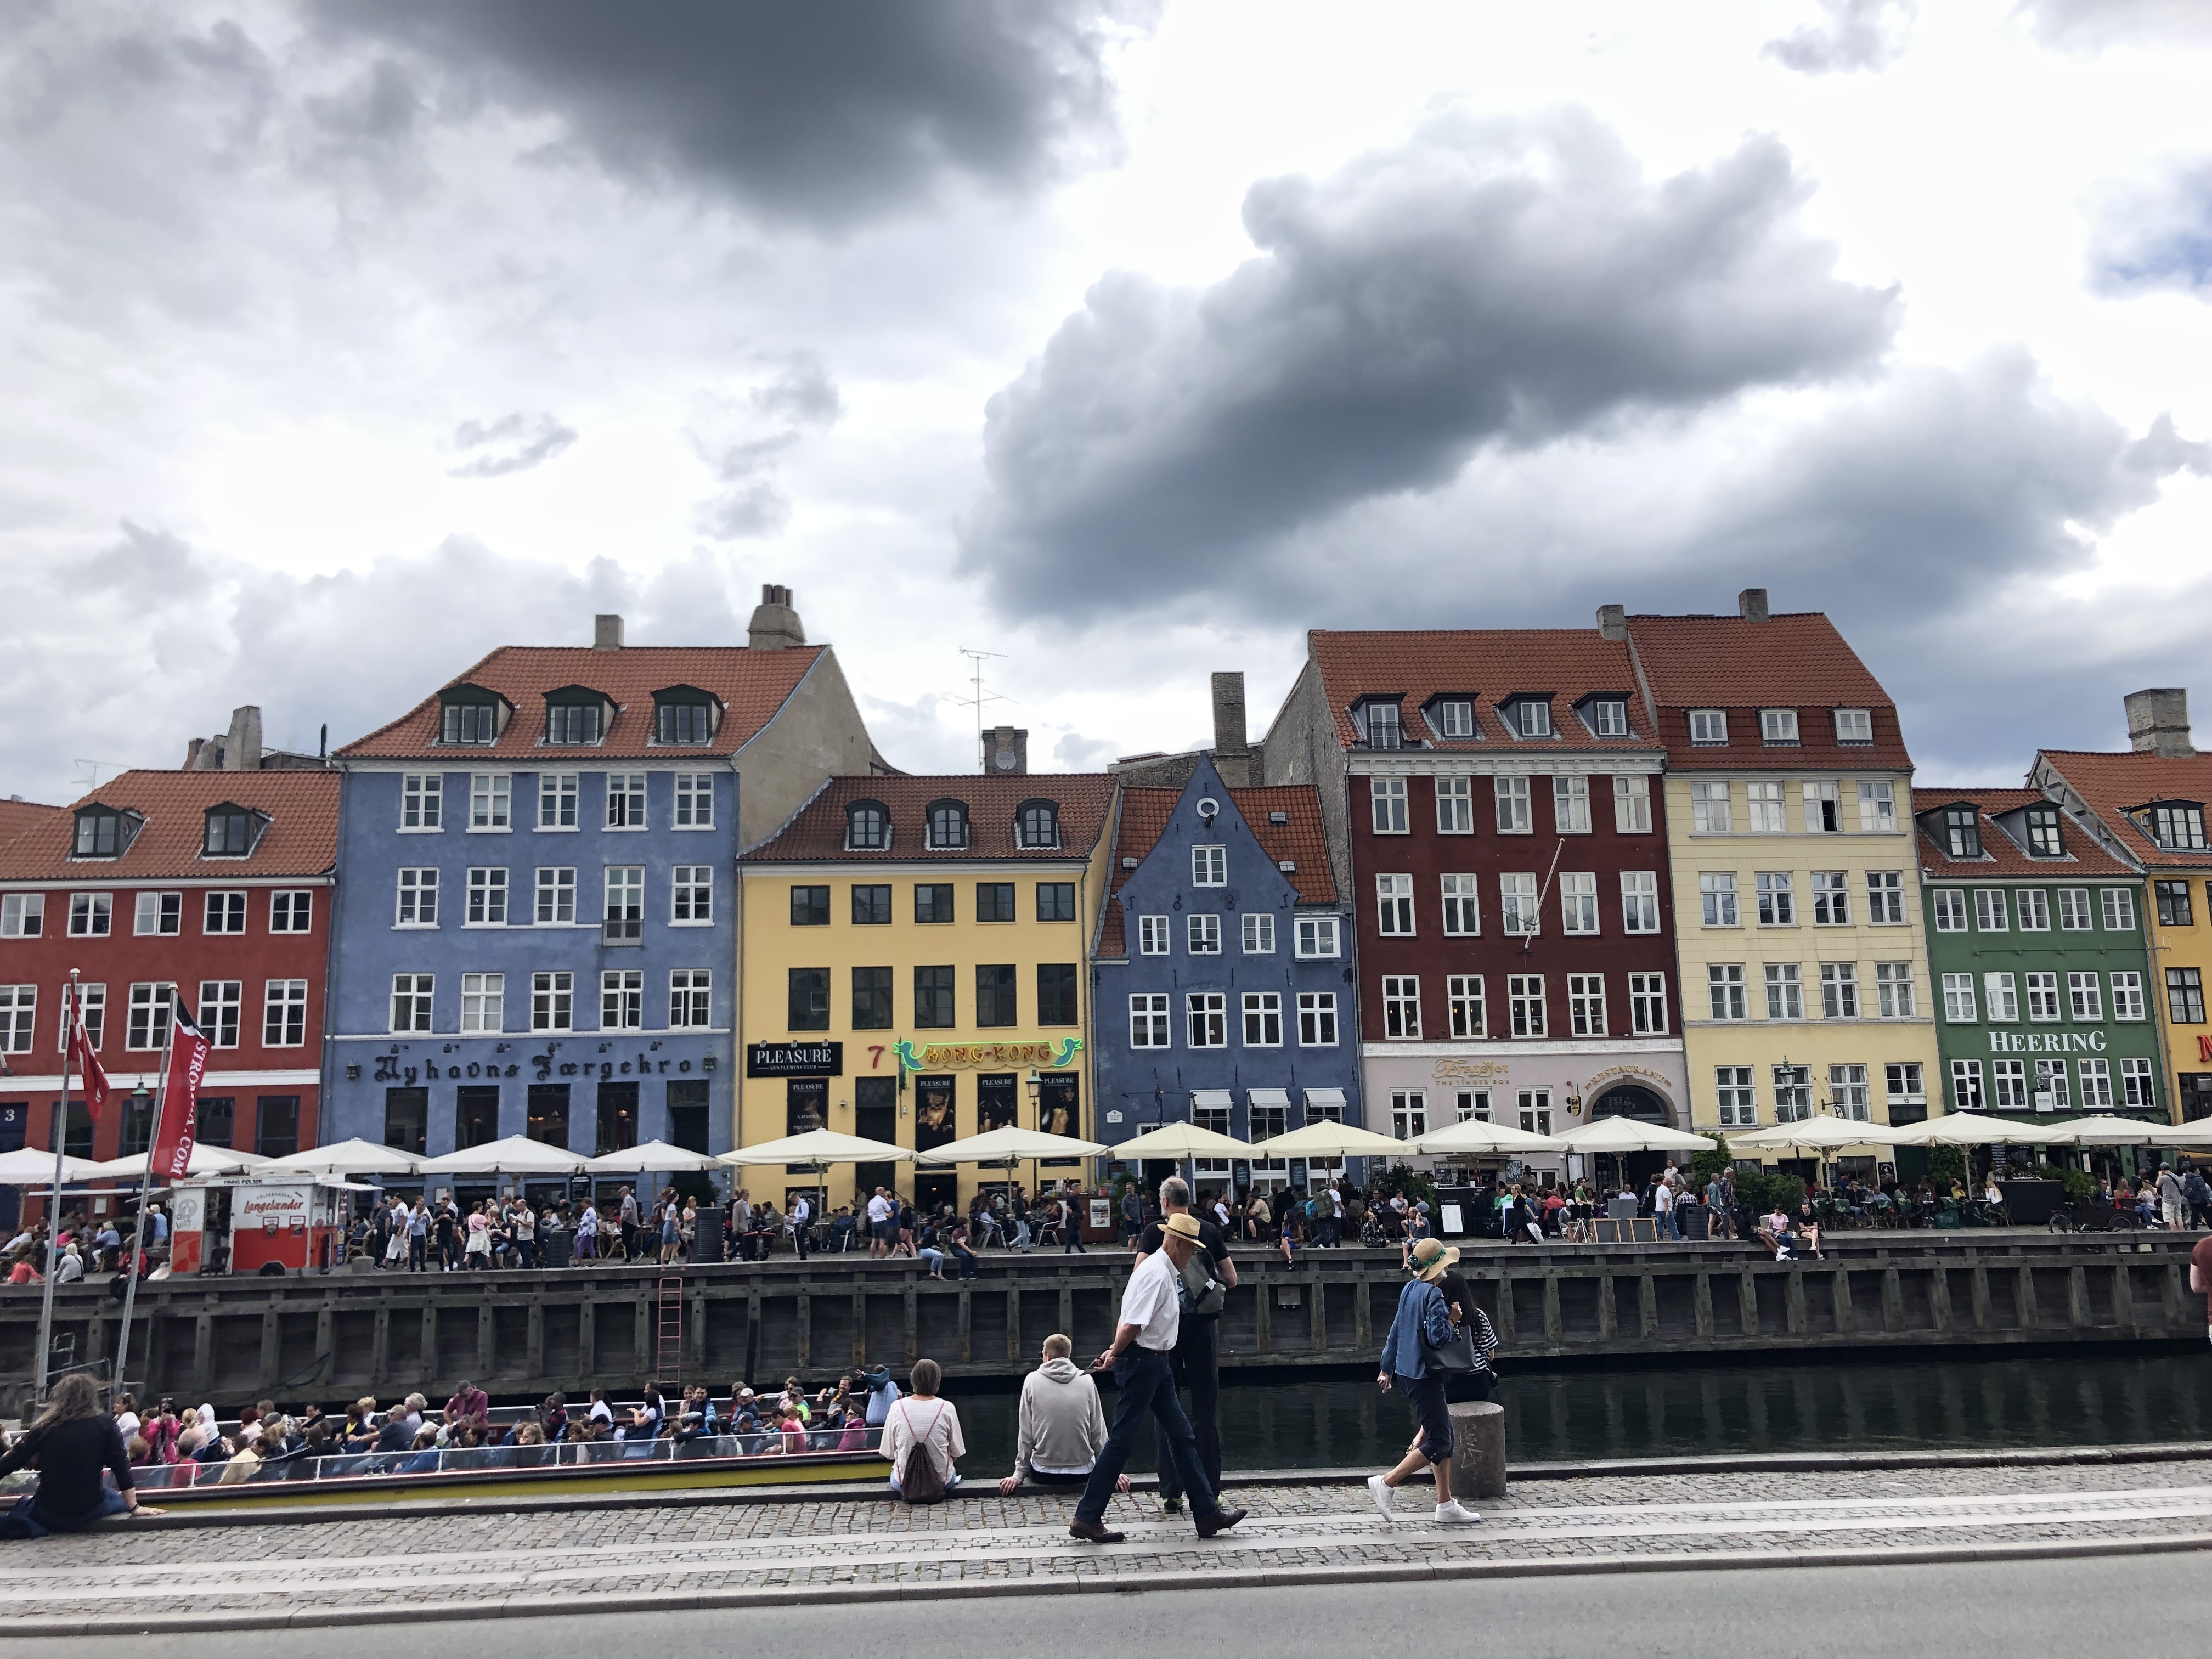 Famous colorful buildings along a harbor in Copenhagen.